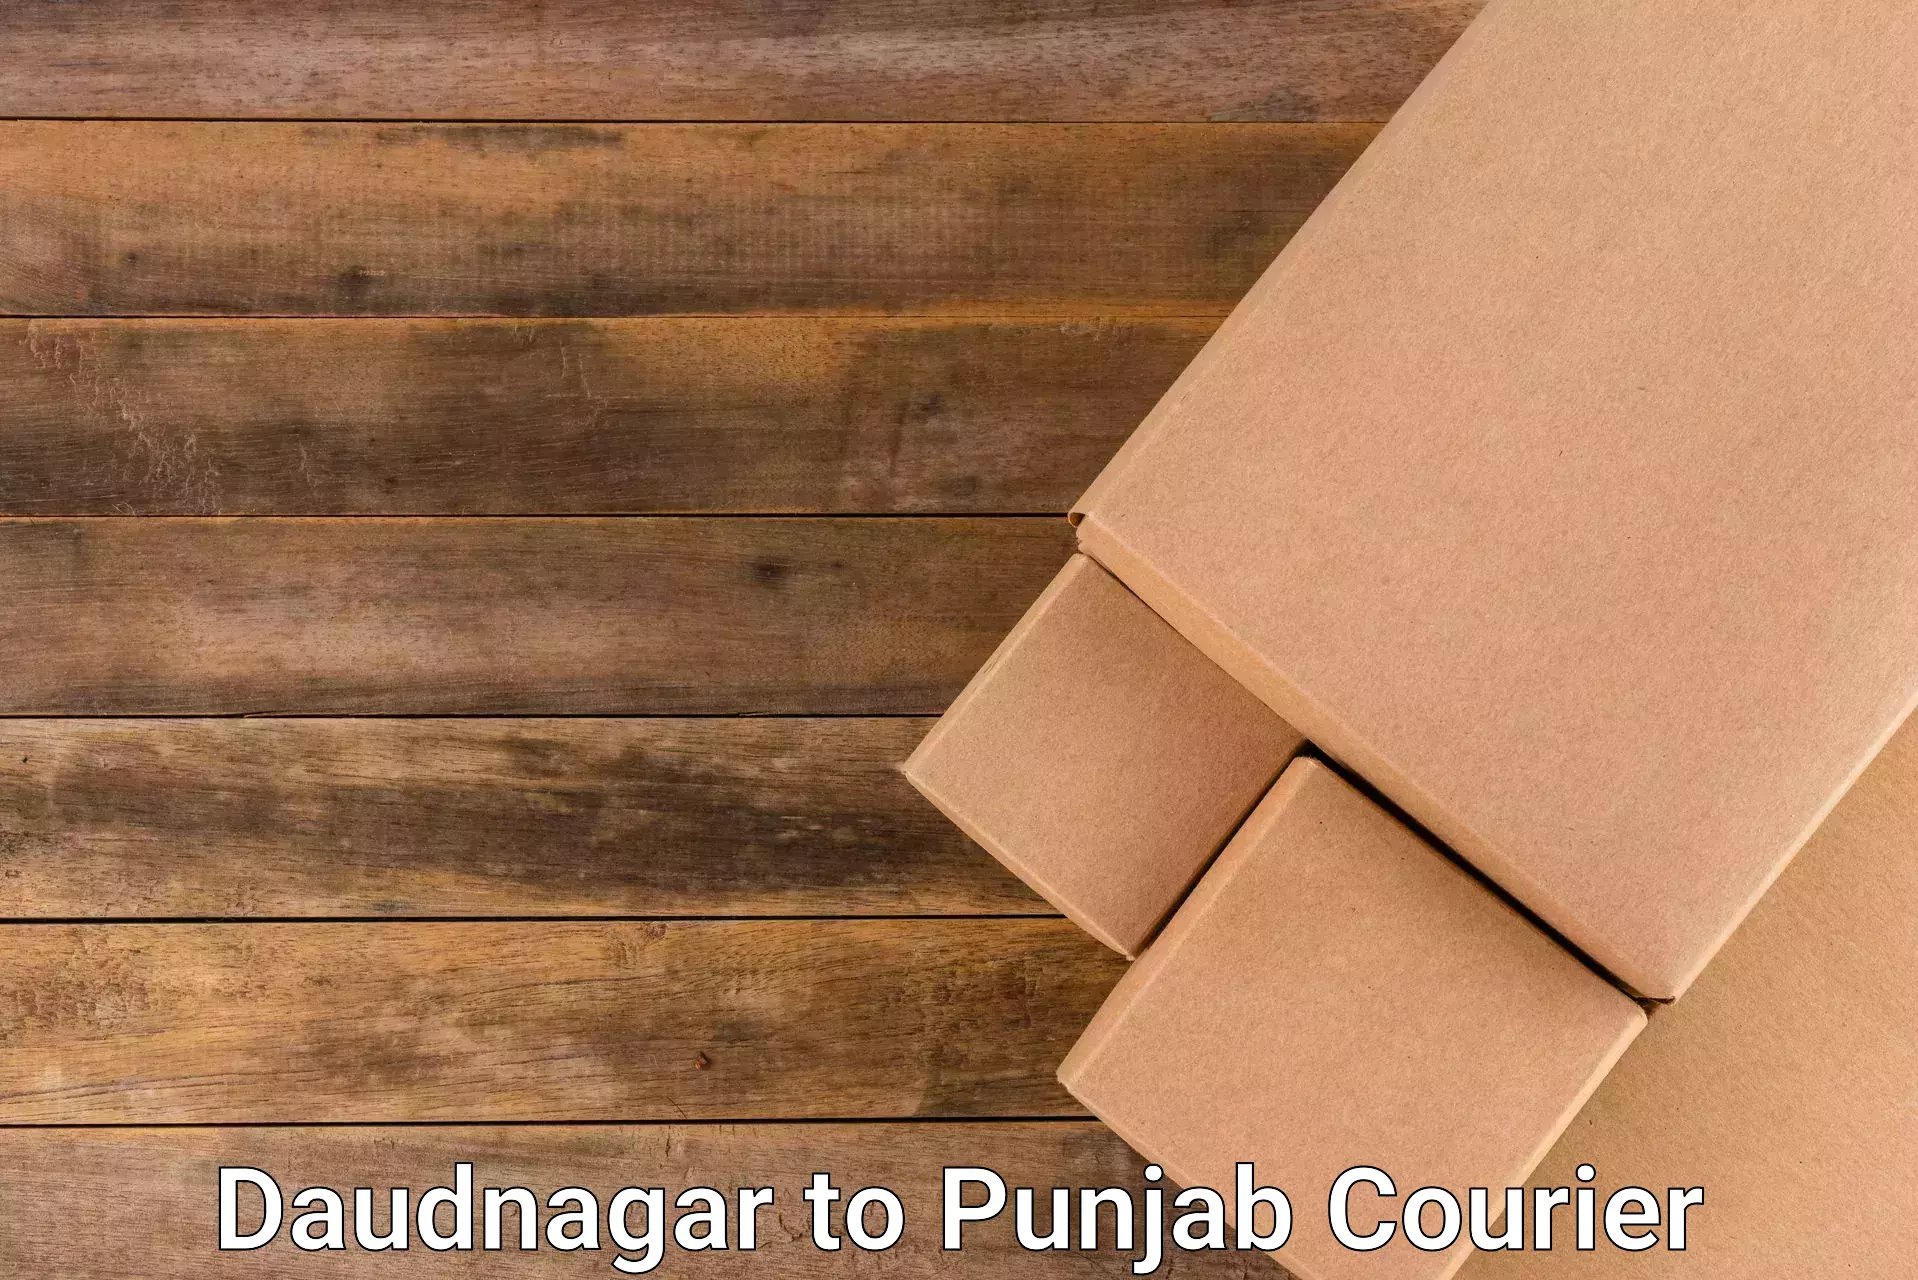 Customized shipping options Daudnagar to Punjab